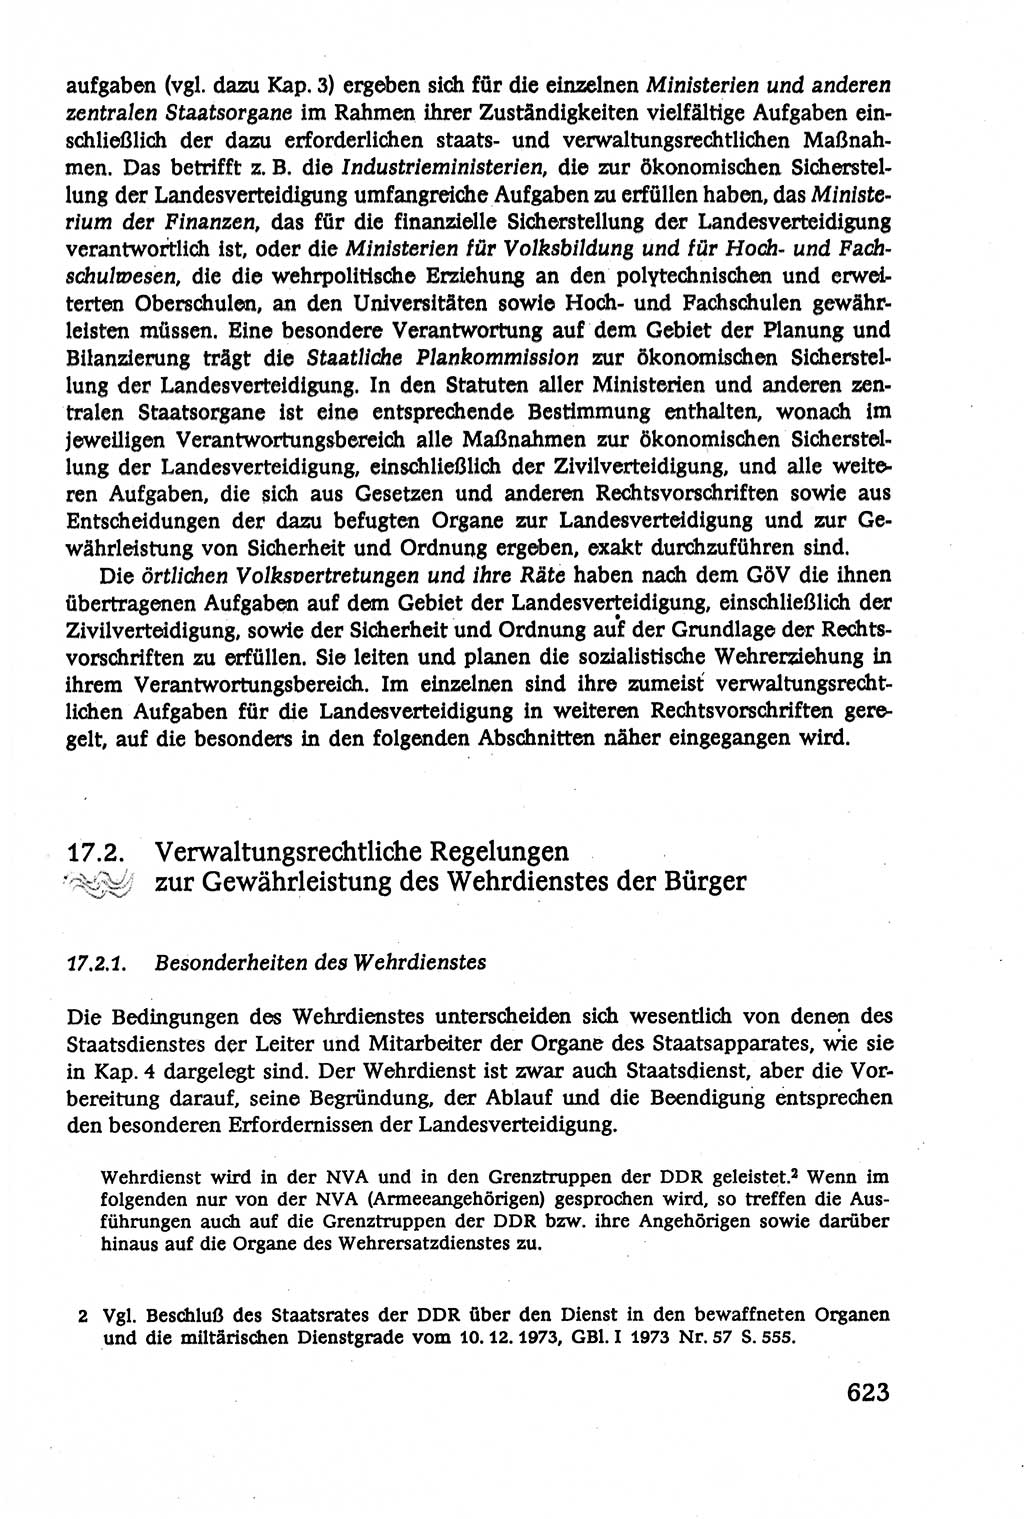 Verwaltungsrecht [Deutsche Demokratische Republik (DDR)], Lehrbuch 1979, Seite 623 (Verw.-R. DDR Lb. 1979, S. 623)